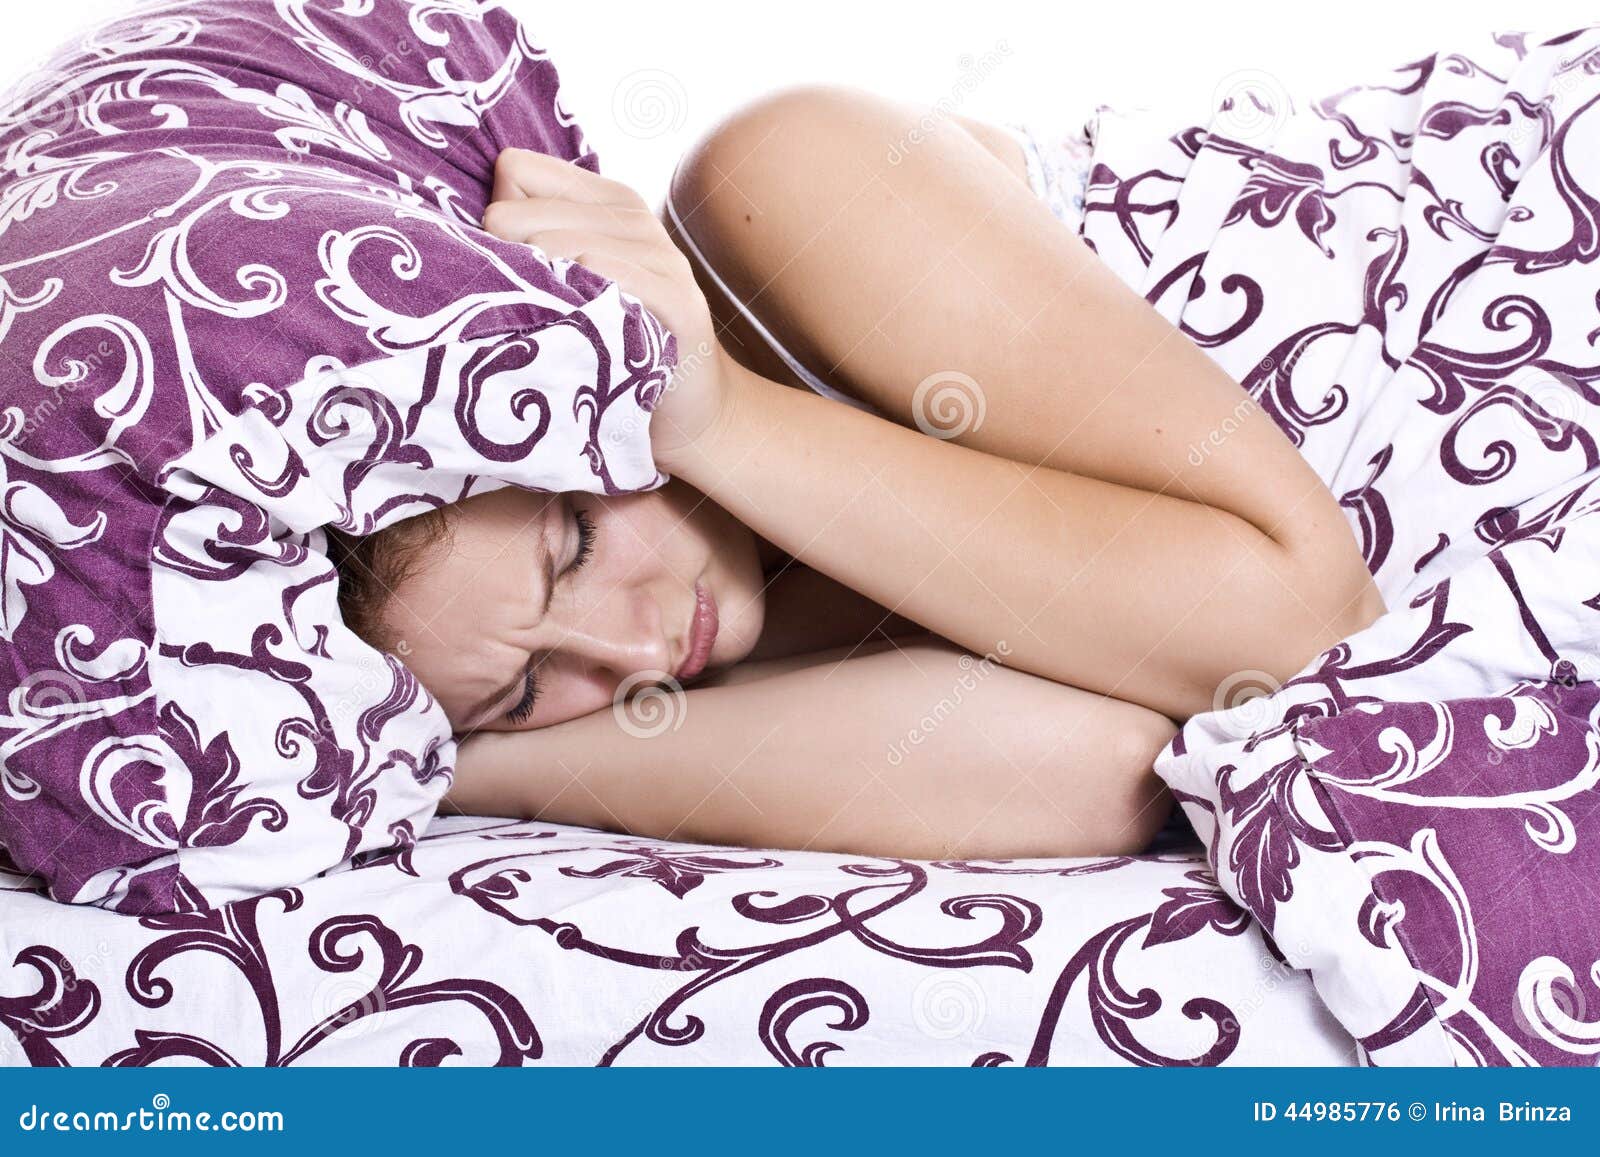 Спать головой в подушку. Девушка закрывает уши подушкой. Фотосессия с подушками. Девушка с подушкой на голове. Женщина на подушке.